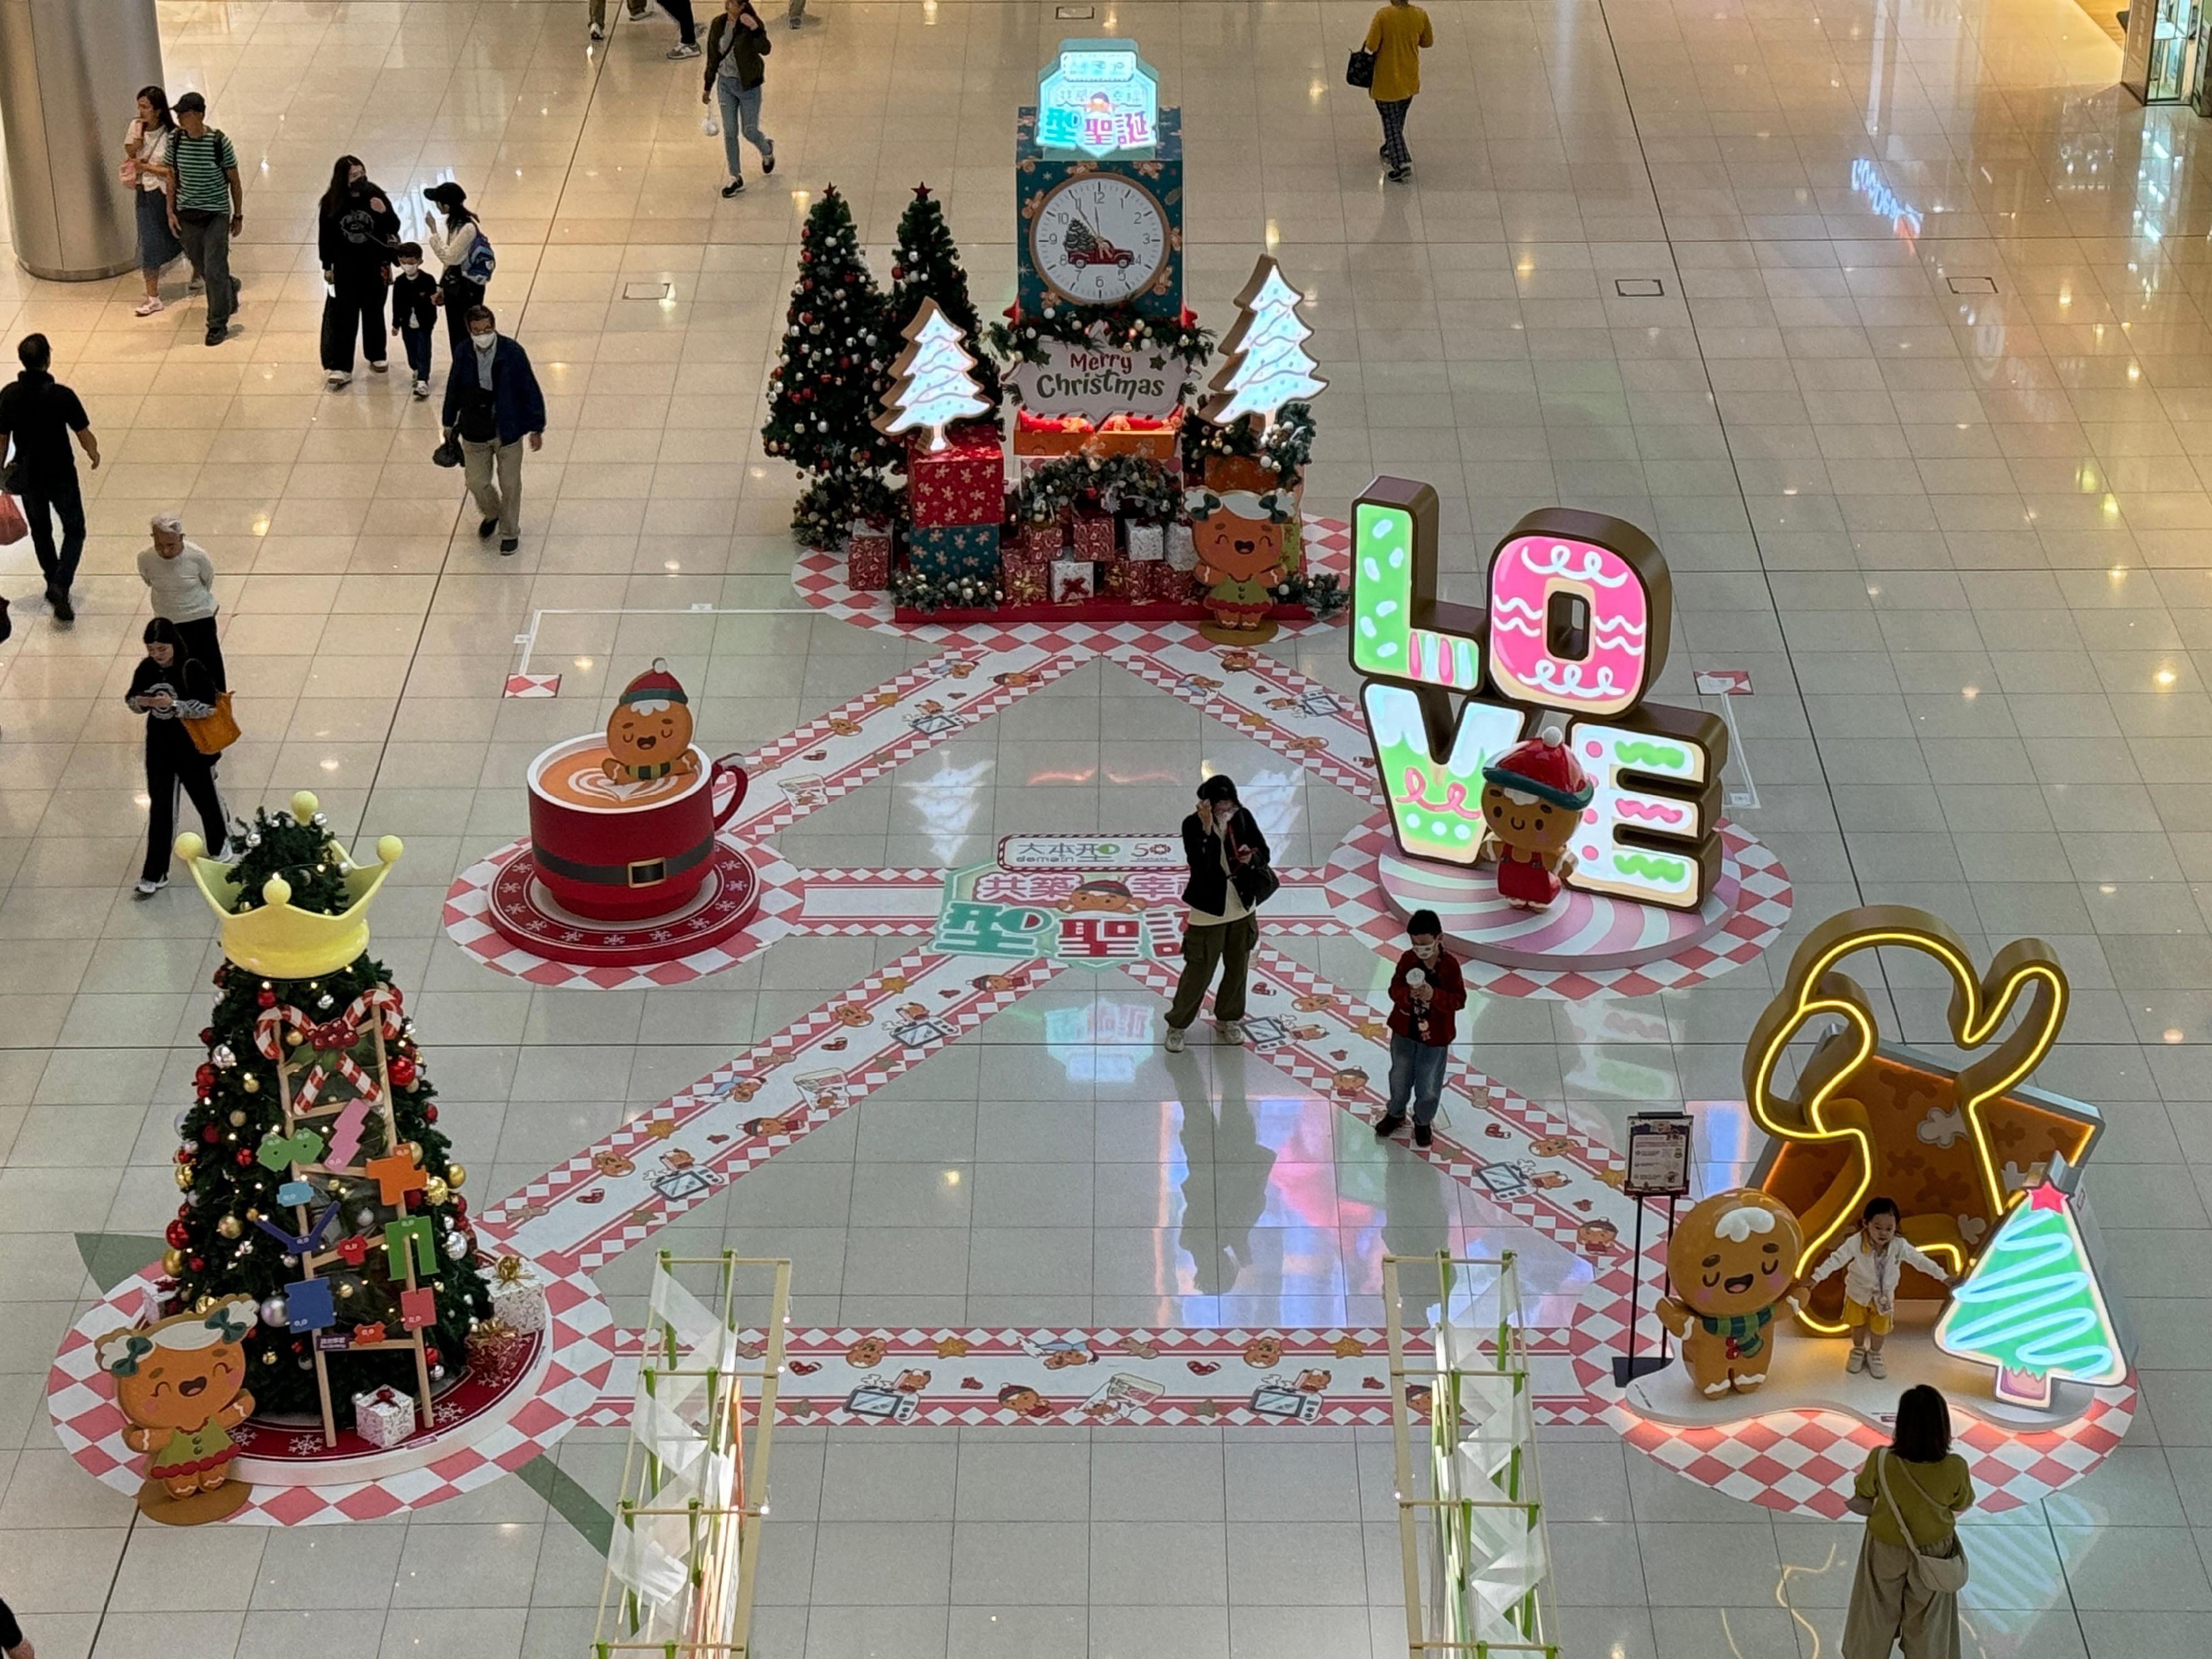 香港房屋委員會（房委會）於轄下多個商場舉辦聖誕節推廣及夜繽紛活動，與市民歡度聖誕。圖示房委會位於油塘的區域商場大本型於地下中庭以薑餅人家族為主題的聖誕裝置。